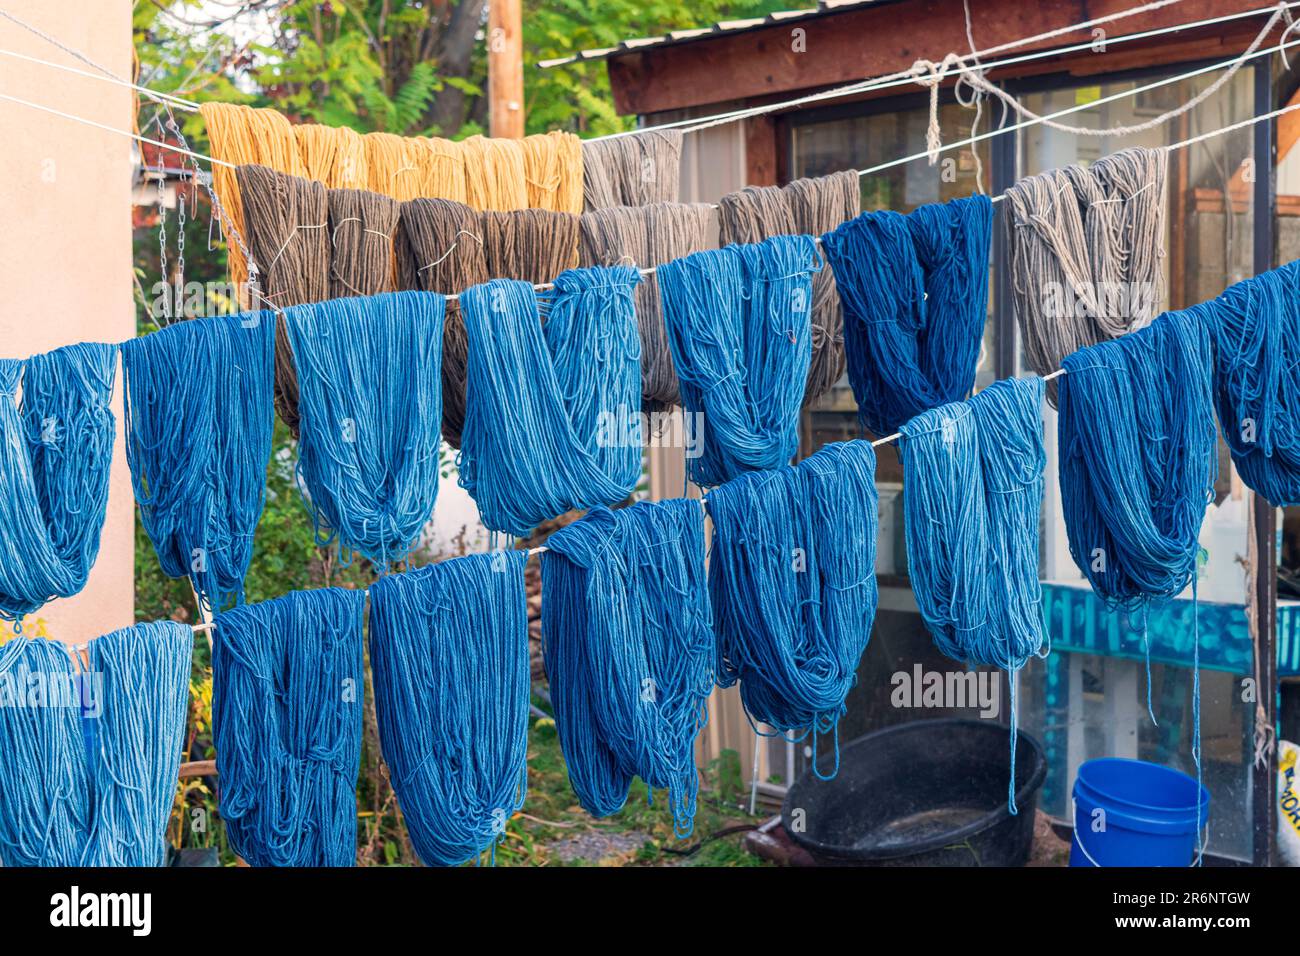 Matasse di filo tinto a mano nelle sfumature di blu, oro e taupe appendono su linee di corda per asciugare all'aperto al negozio di tessitura Trujillo a Chimayo, New Mexico. Foto Stock